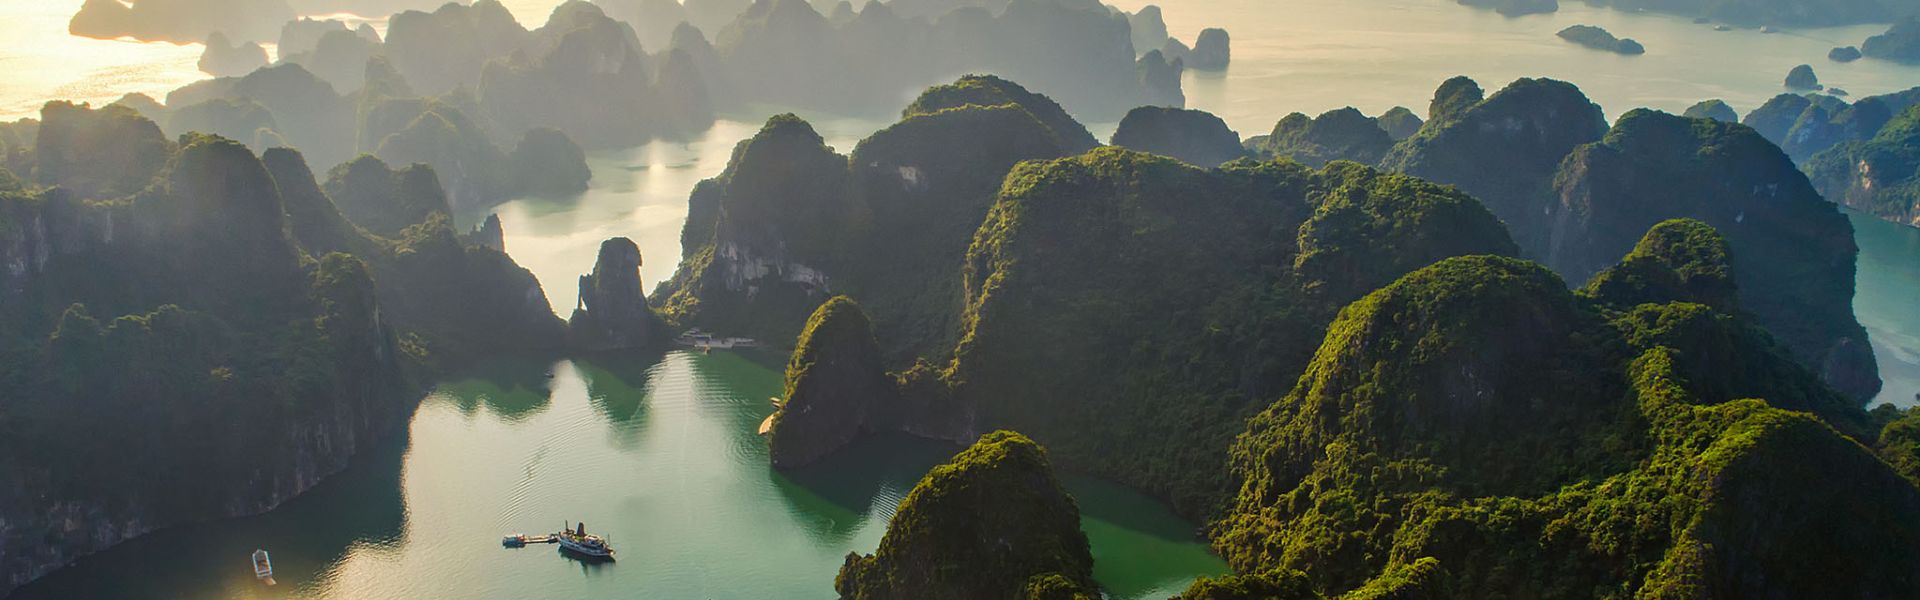 La Bahía de Halong - Consejos de viaje | Guía de viajes a Vietnam